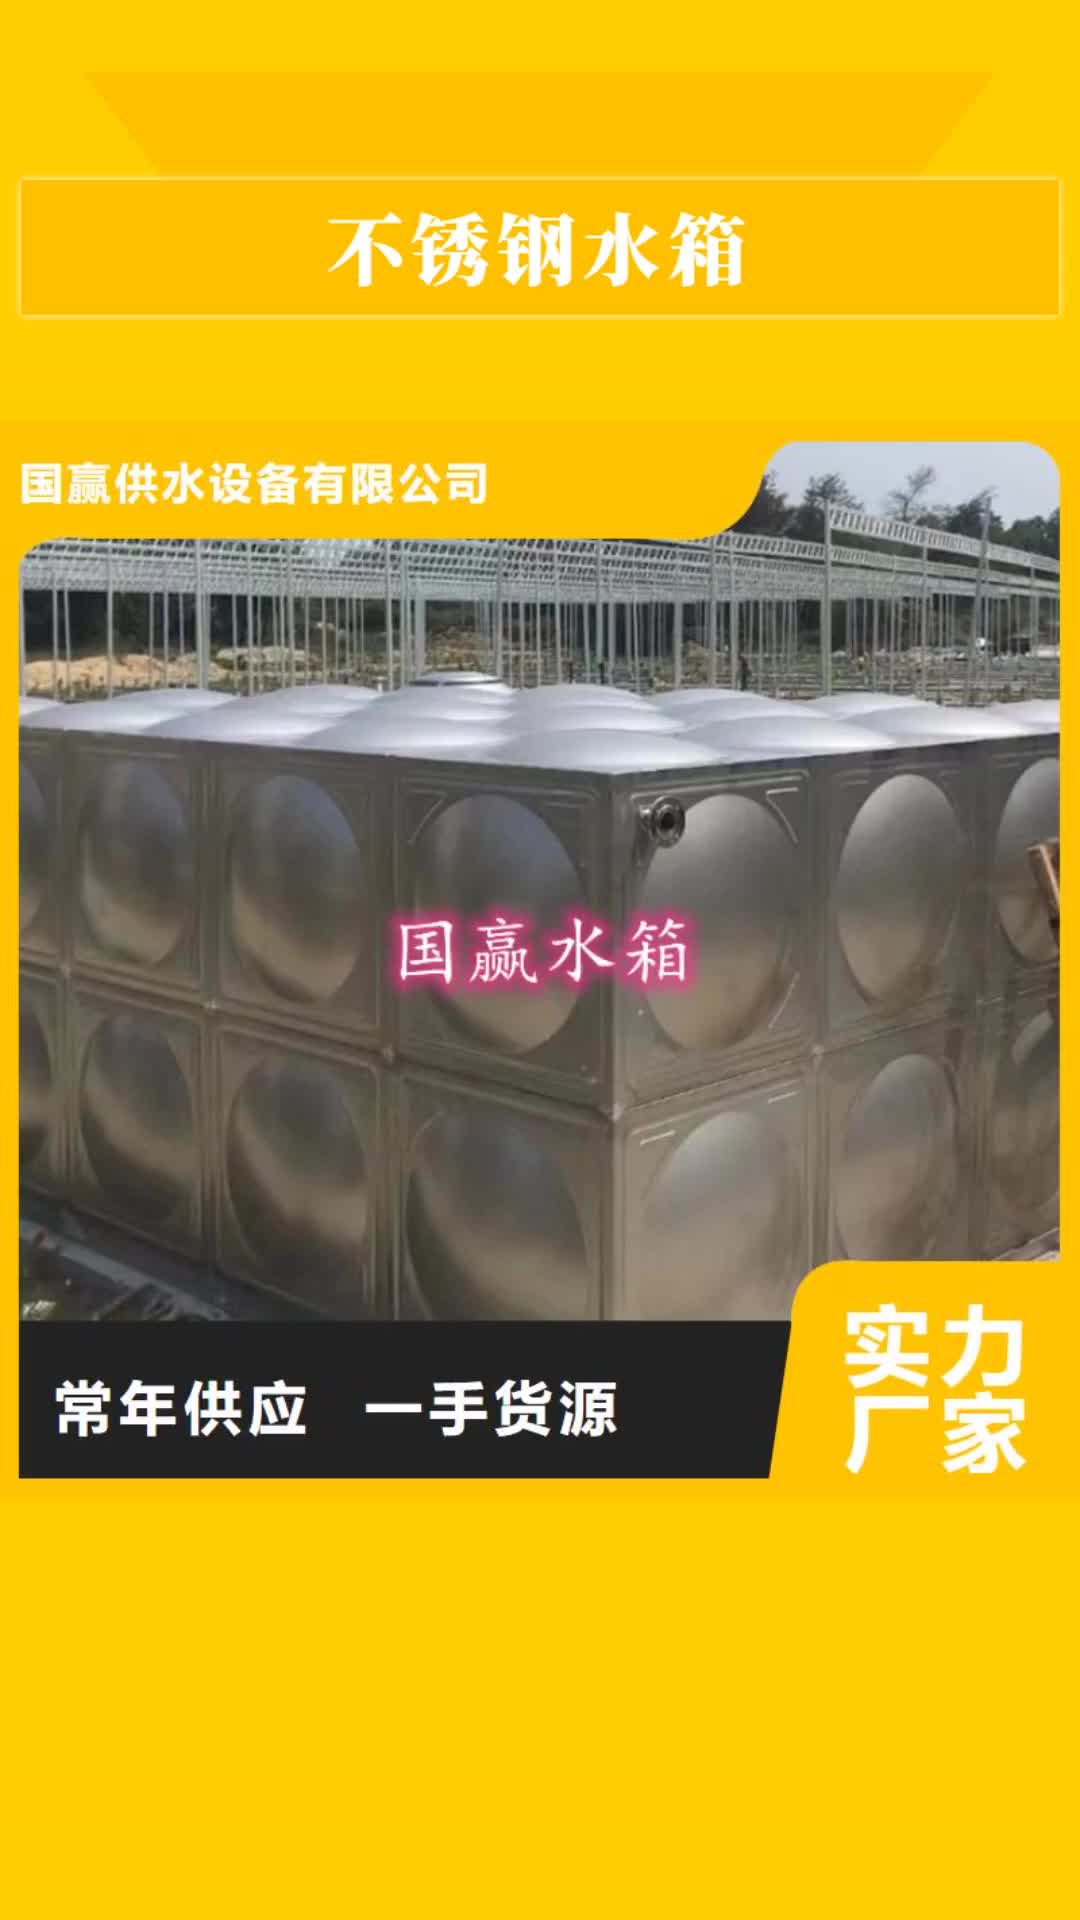 新乡 不锈钢水箱,【不锈钢保温水箱】支持批发零售